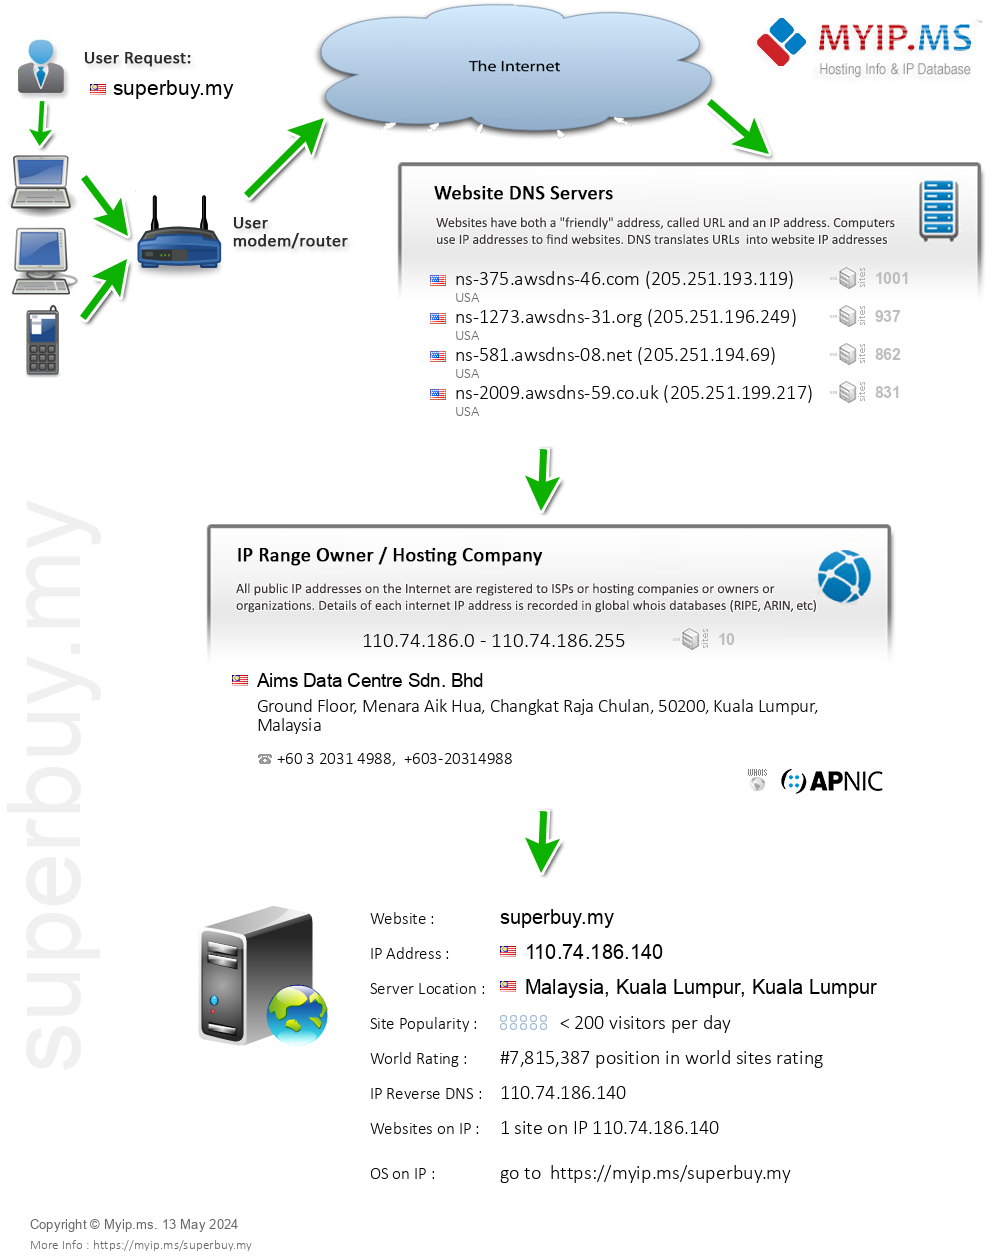 Superbuy.my - Website Hosting Visual IP Diagram